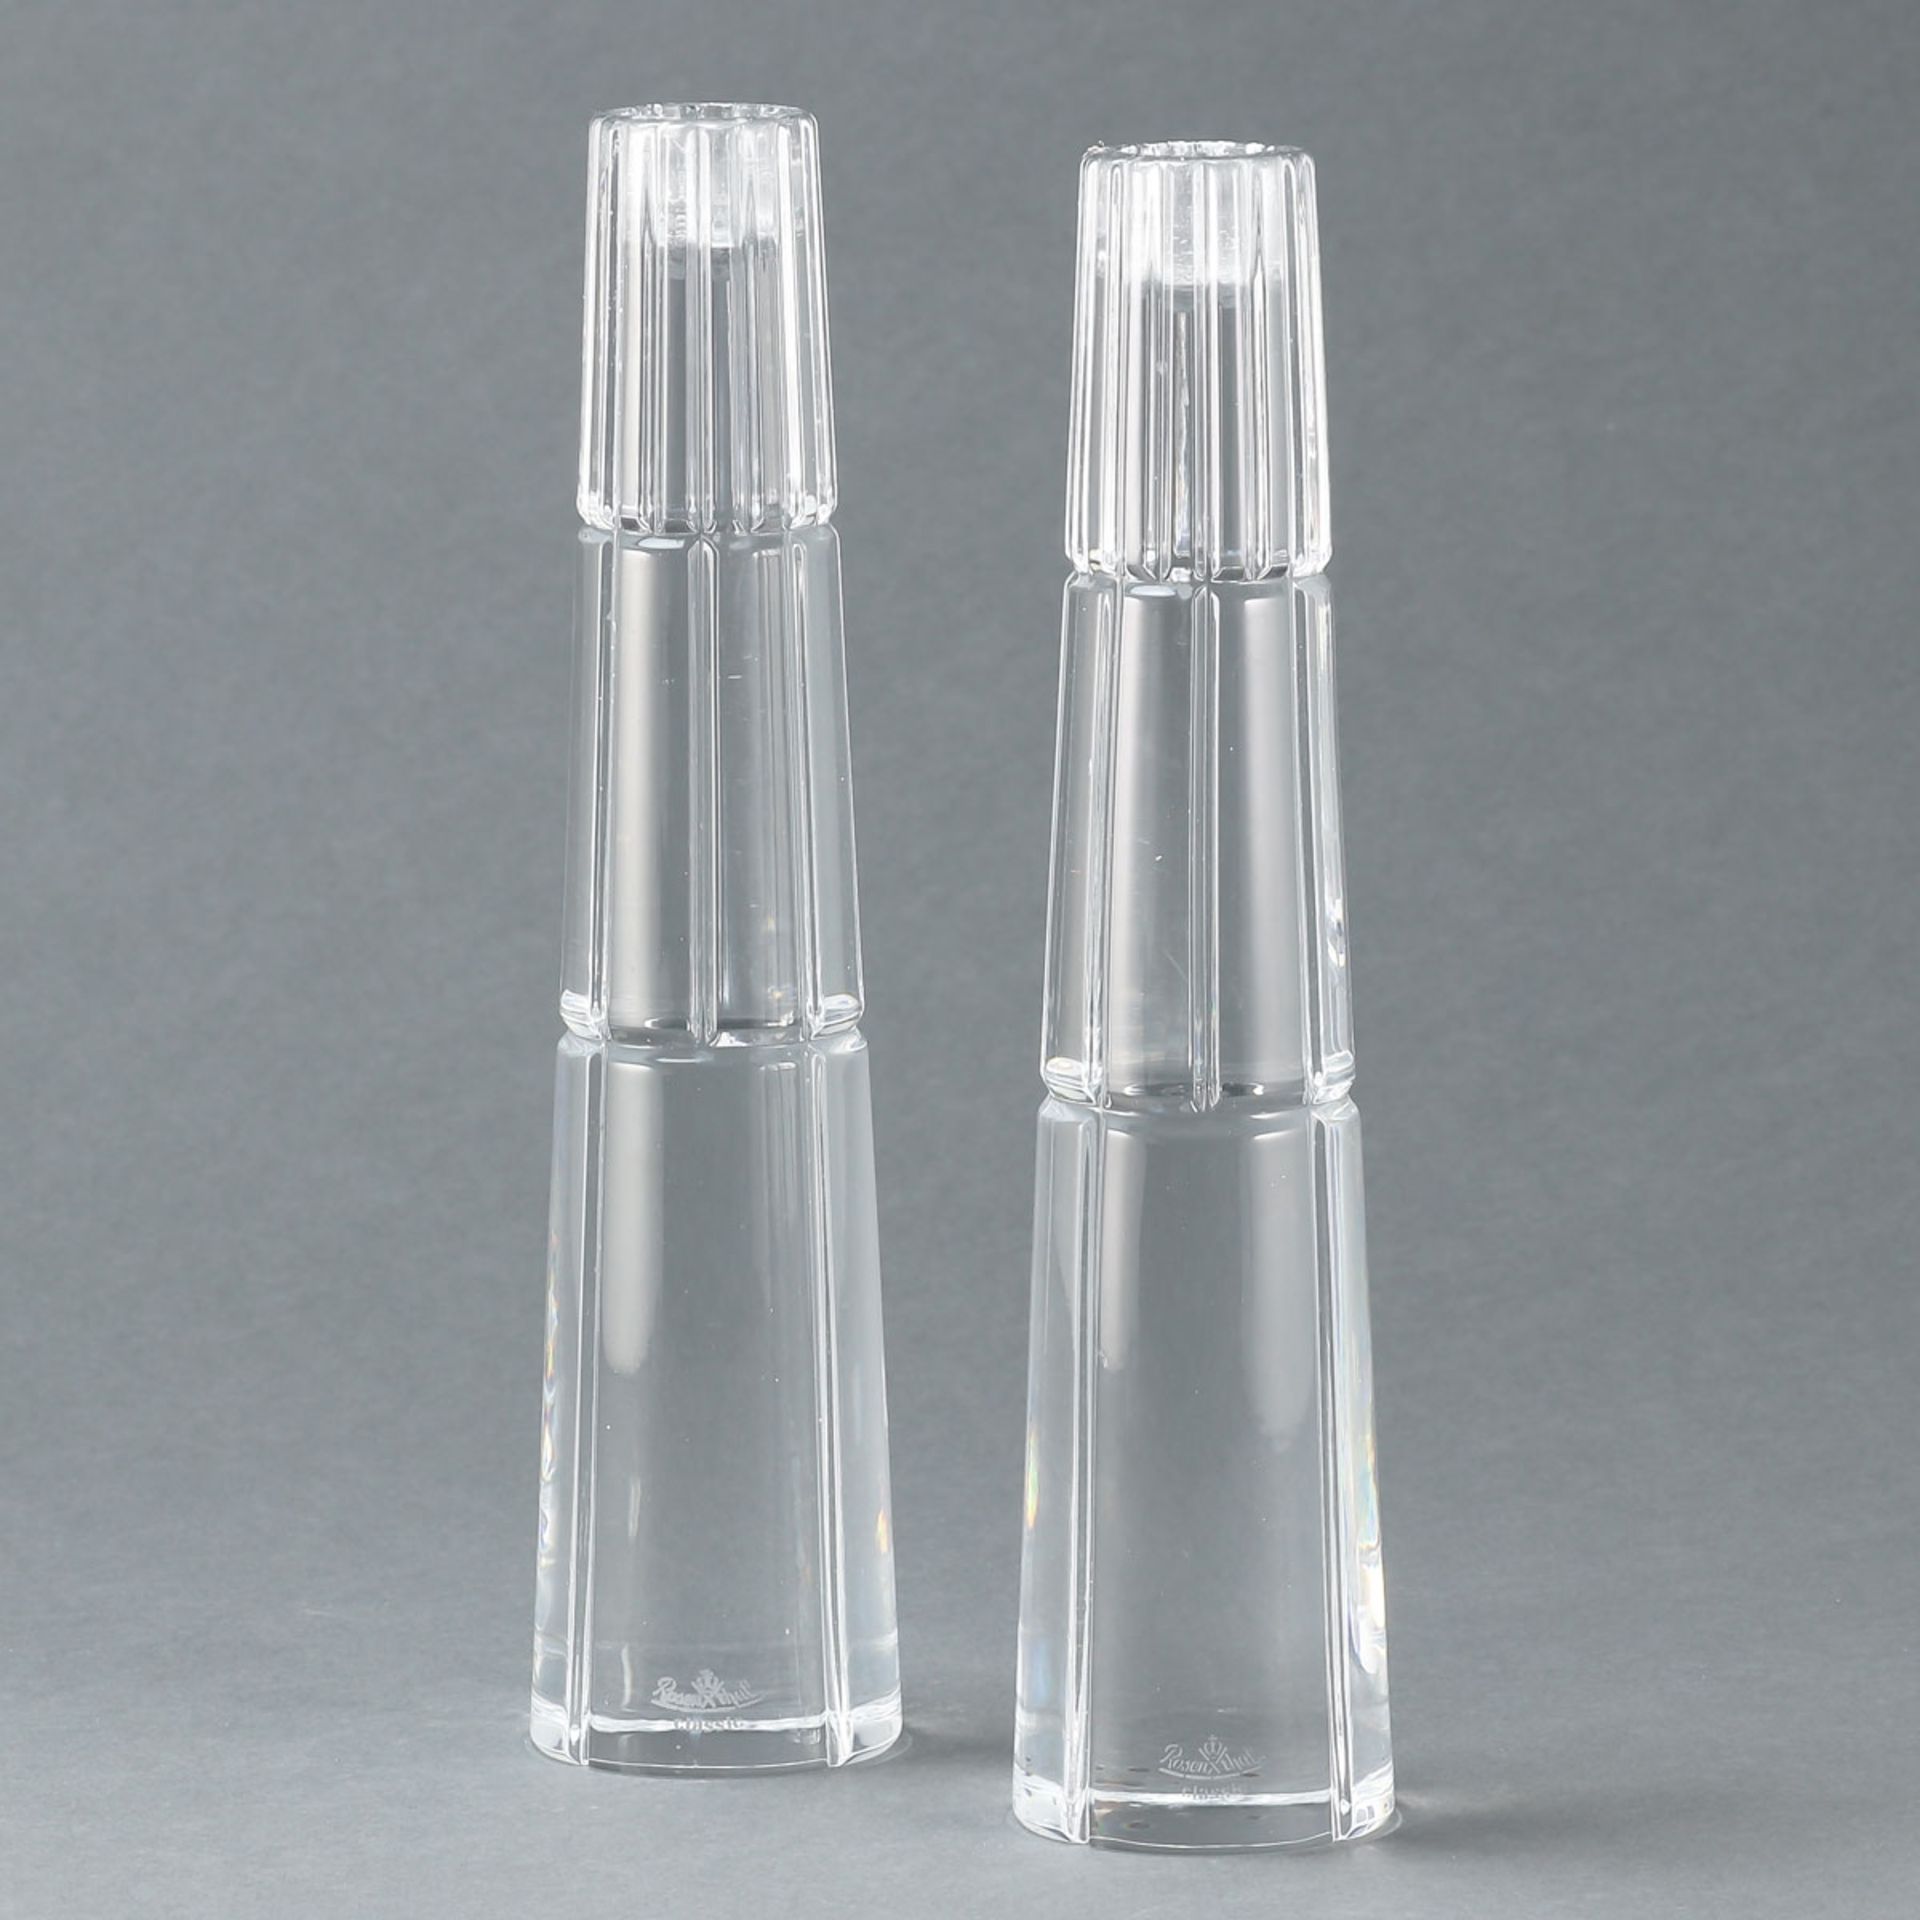 Paar Kerzenleuchter Tresor Rosenthal AG, Selb nach 1975. Farbloses Pressglas, facettiert. An